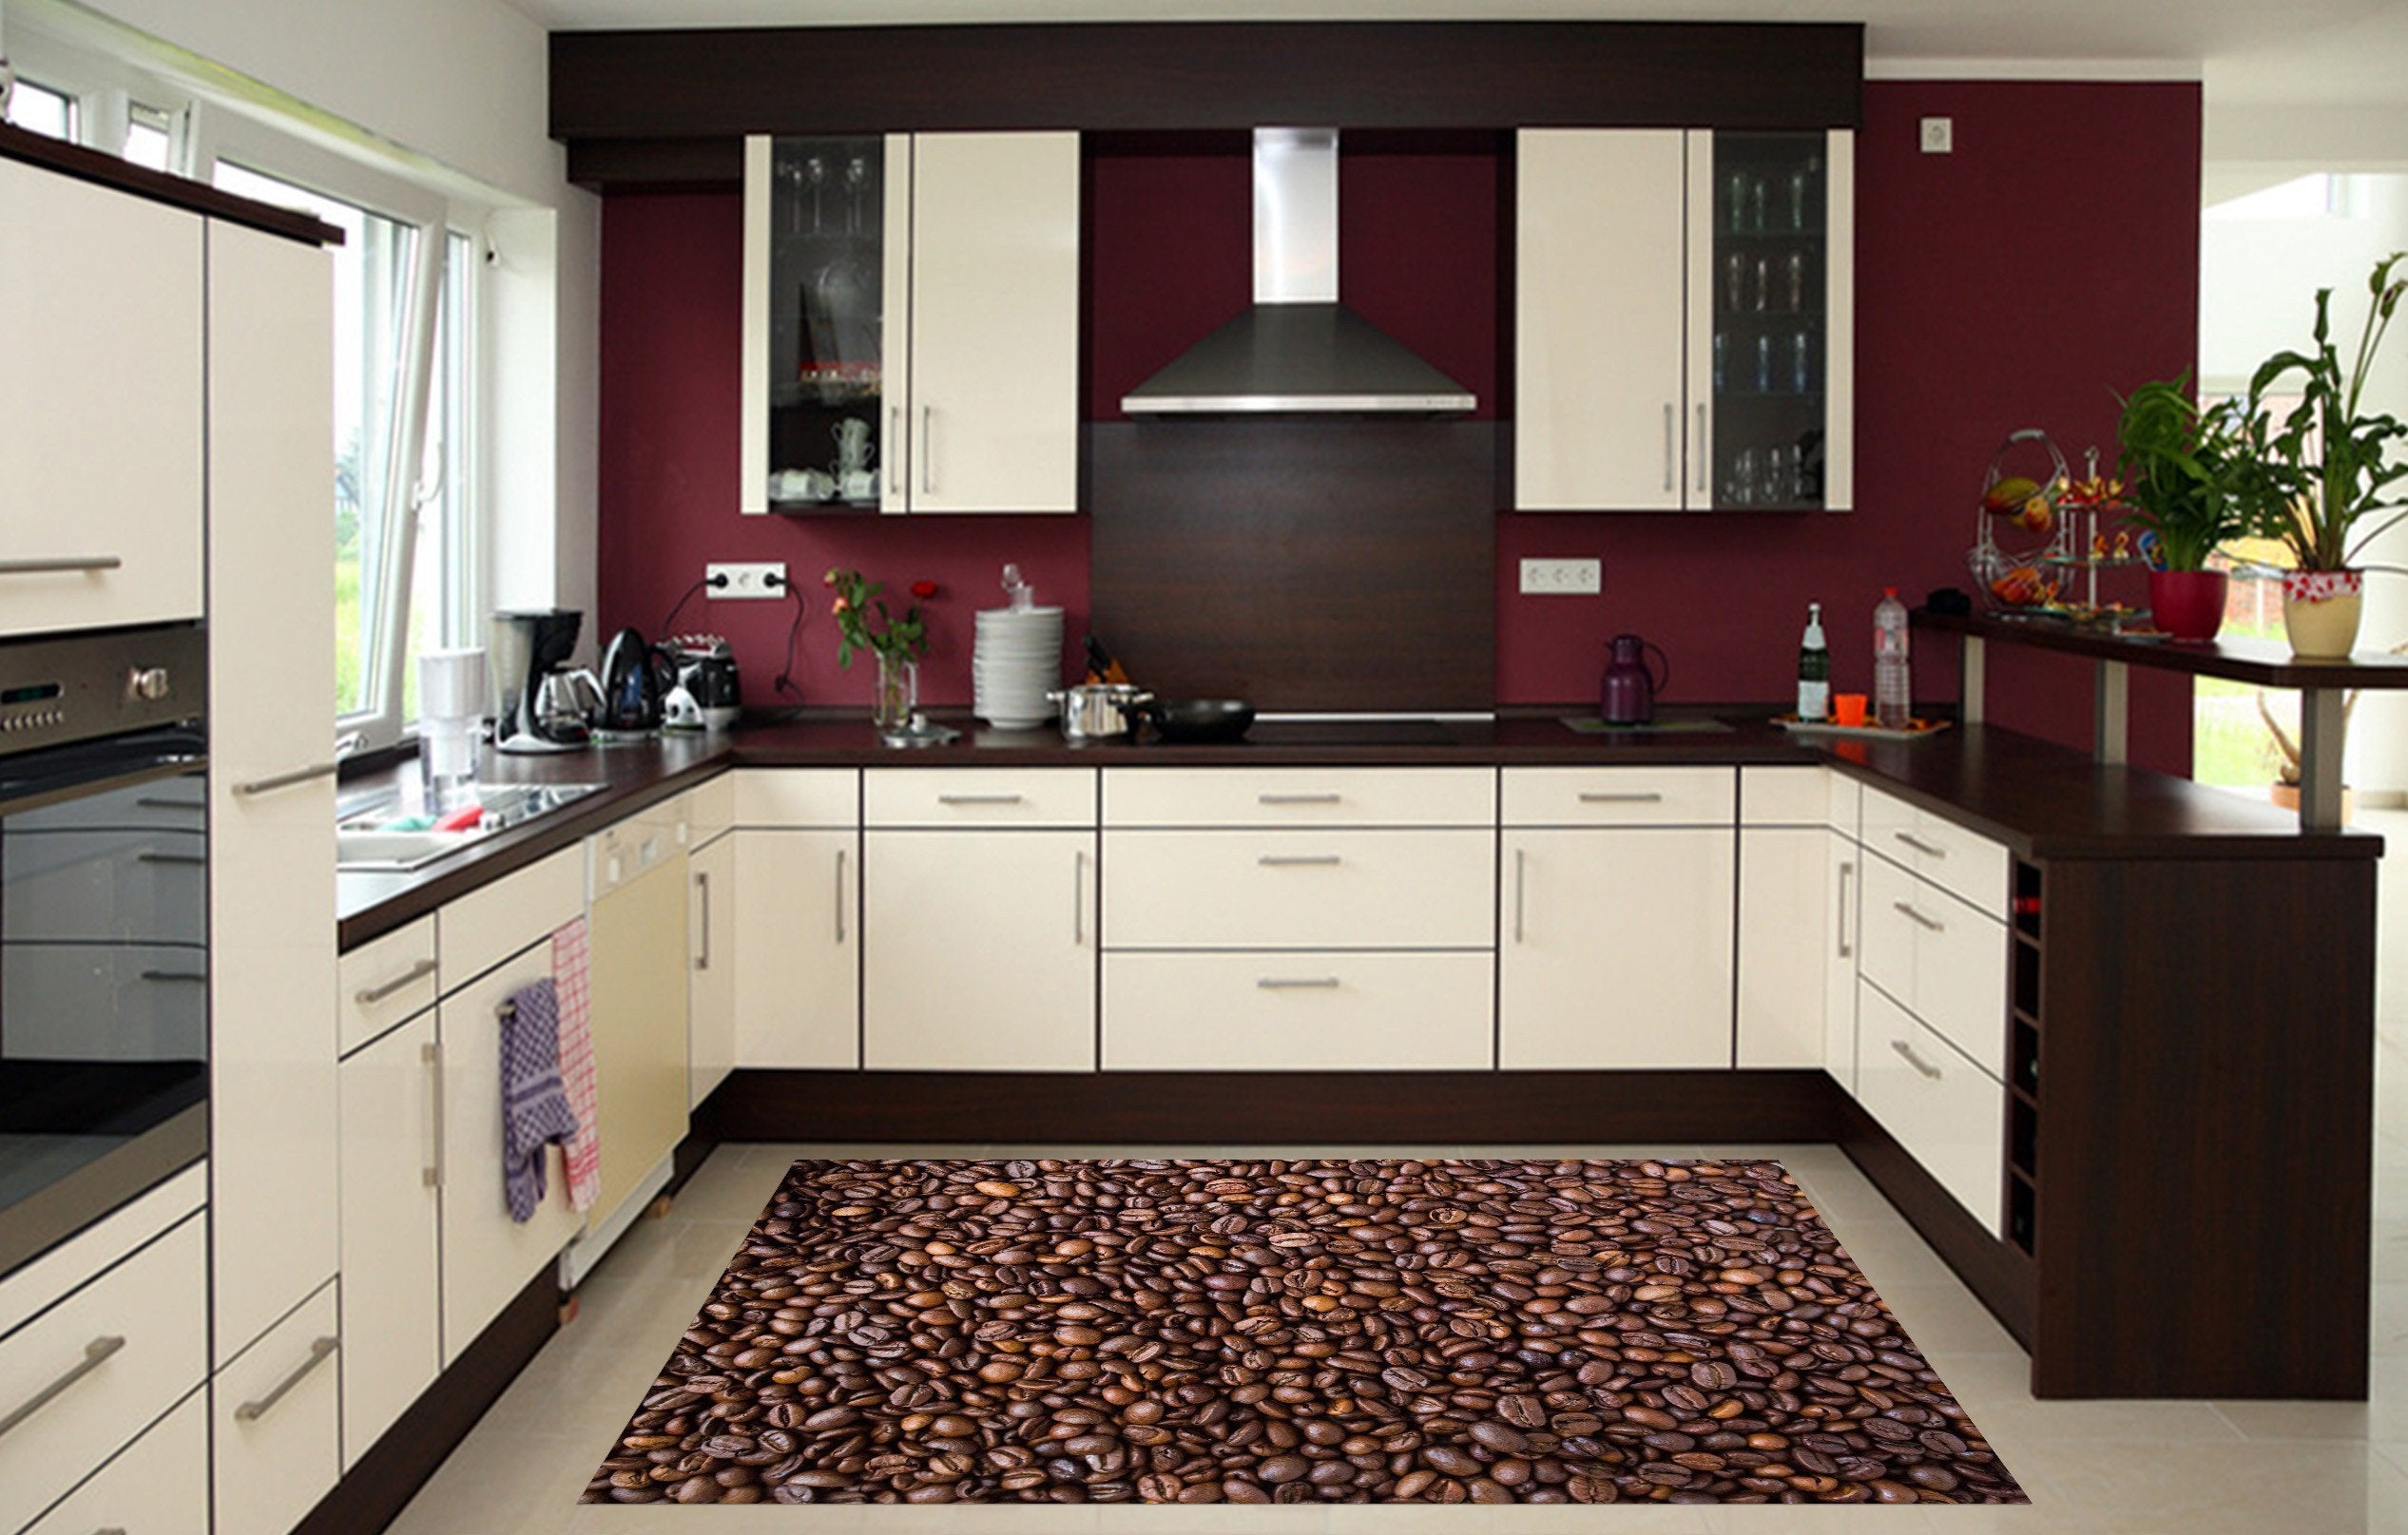 3D Coffee Beans 680 Kitchen Mat Floor Mural Wallpaper AJ Wallpaper 